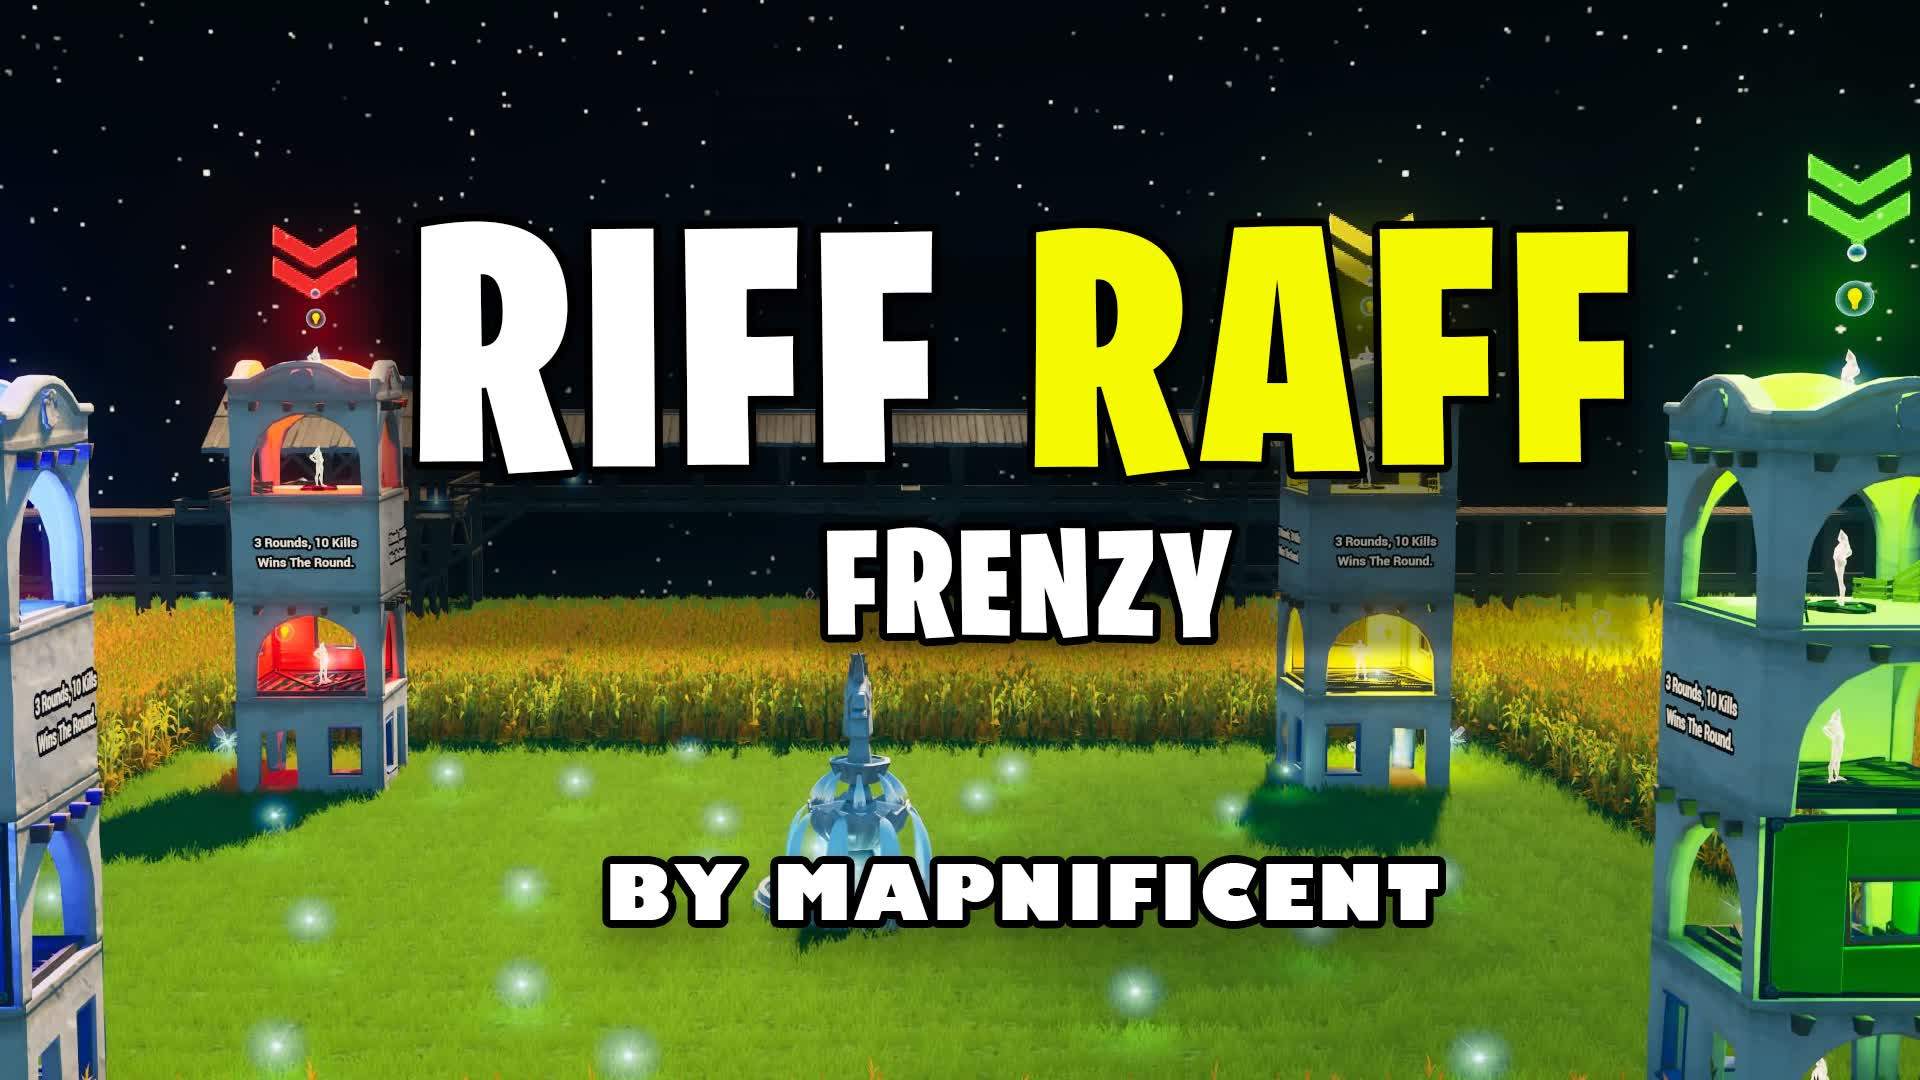 RIFF RAFF FRENZY